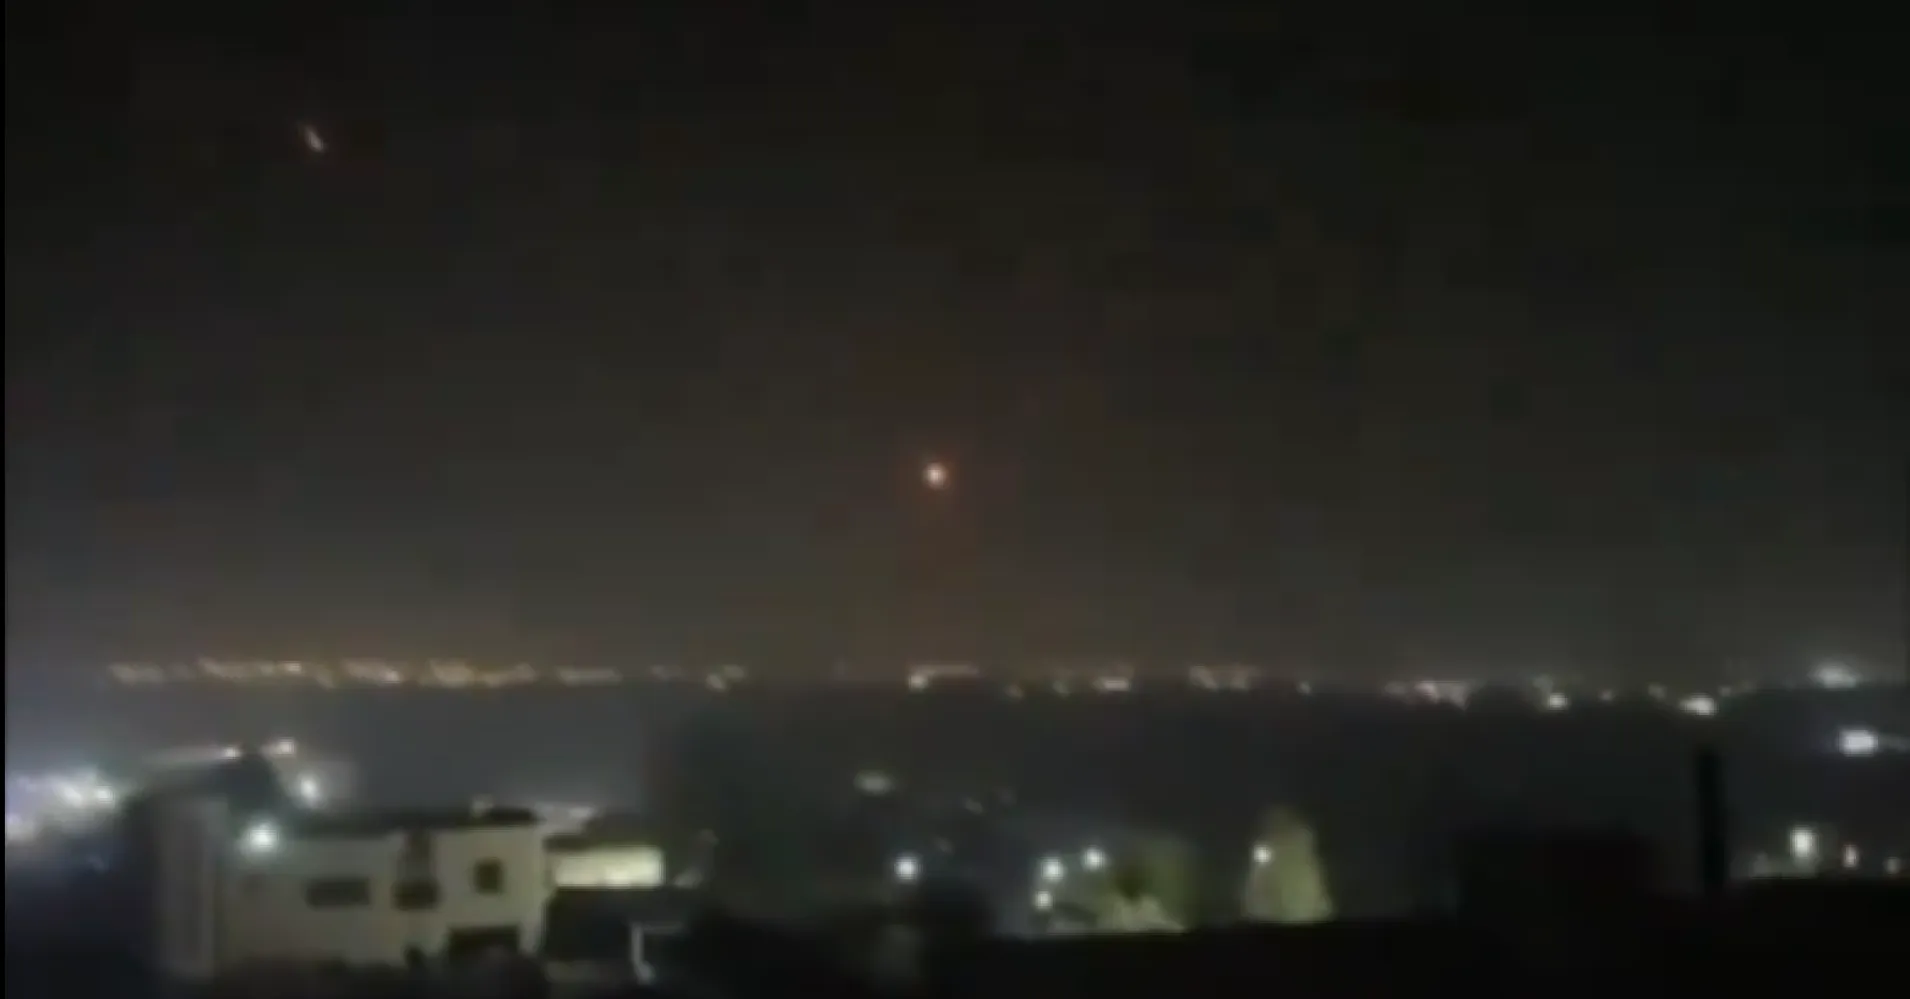 ONLINE: Izrael odráží mohutný vzdušný útok z Íránu. Obrana hlásí sestřelení 200 raket a dronů